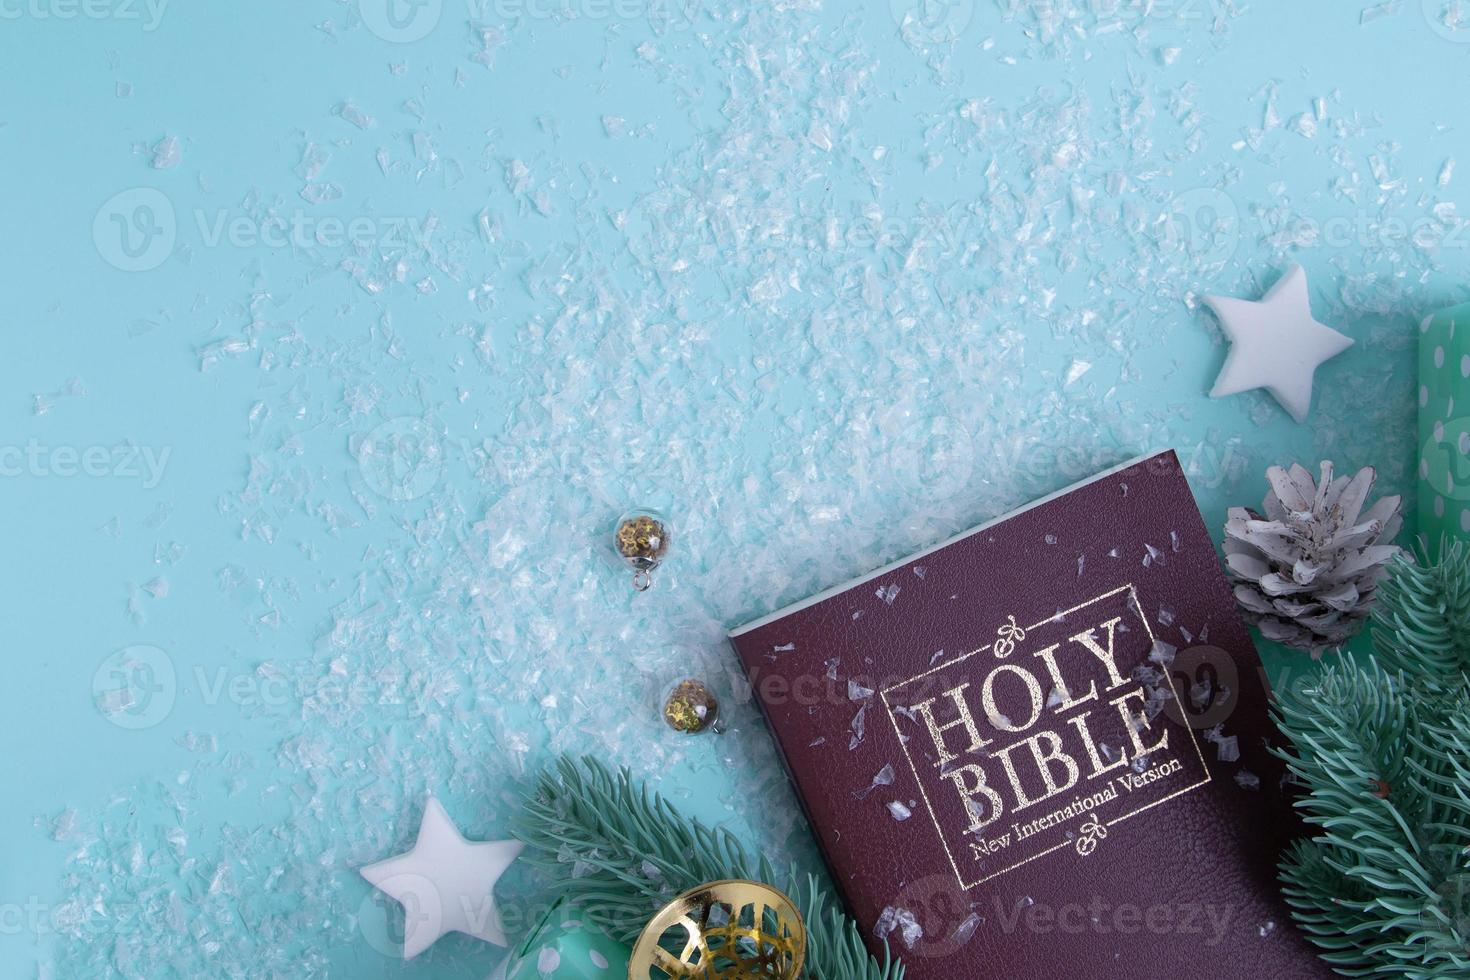 Bíblia Sagrada e decoração de Natal com neve. fundo de inverno cristão foto